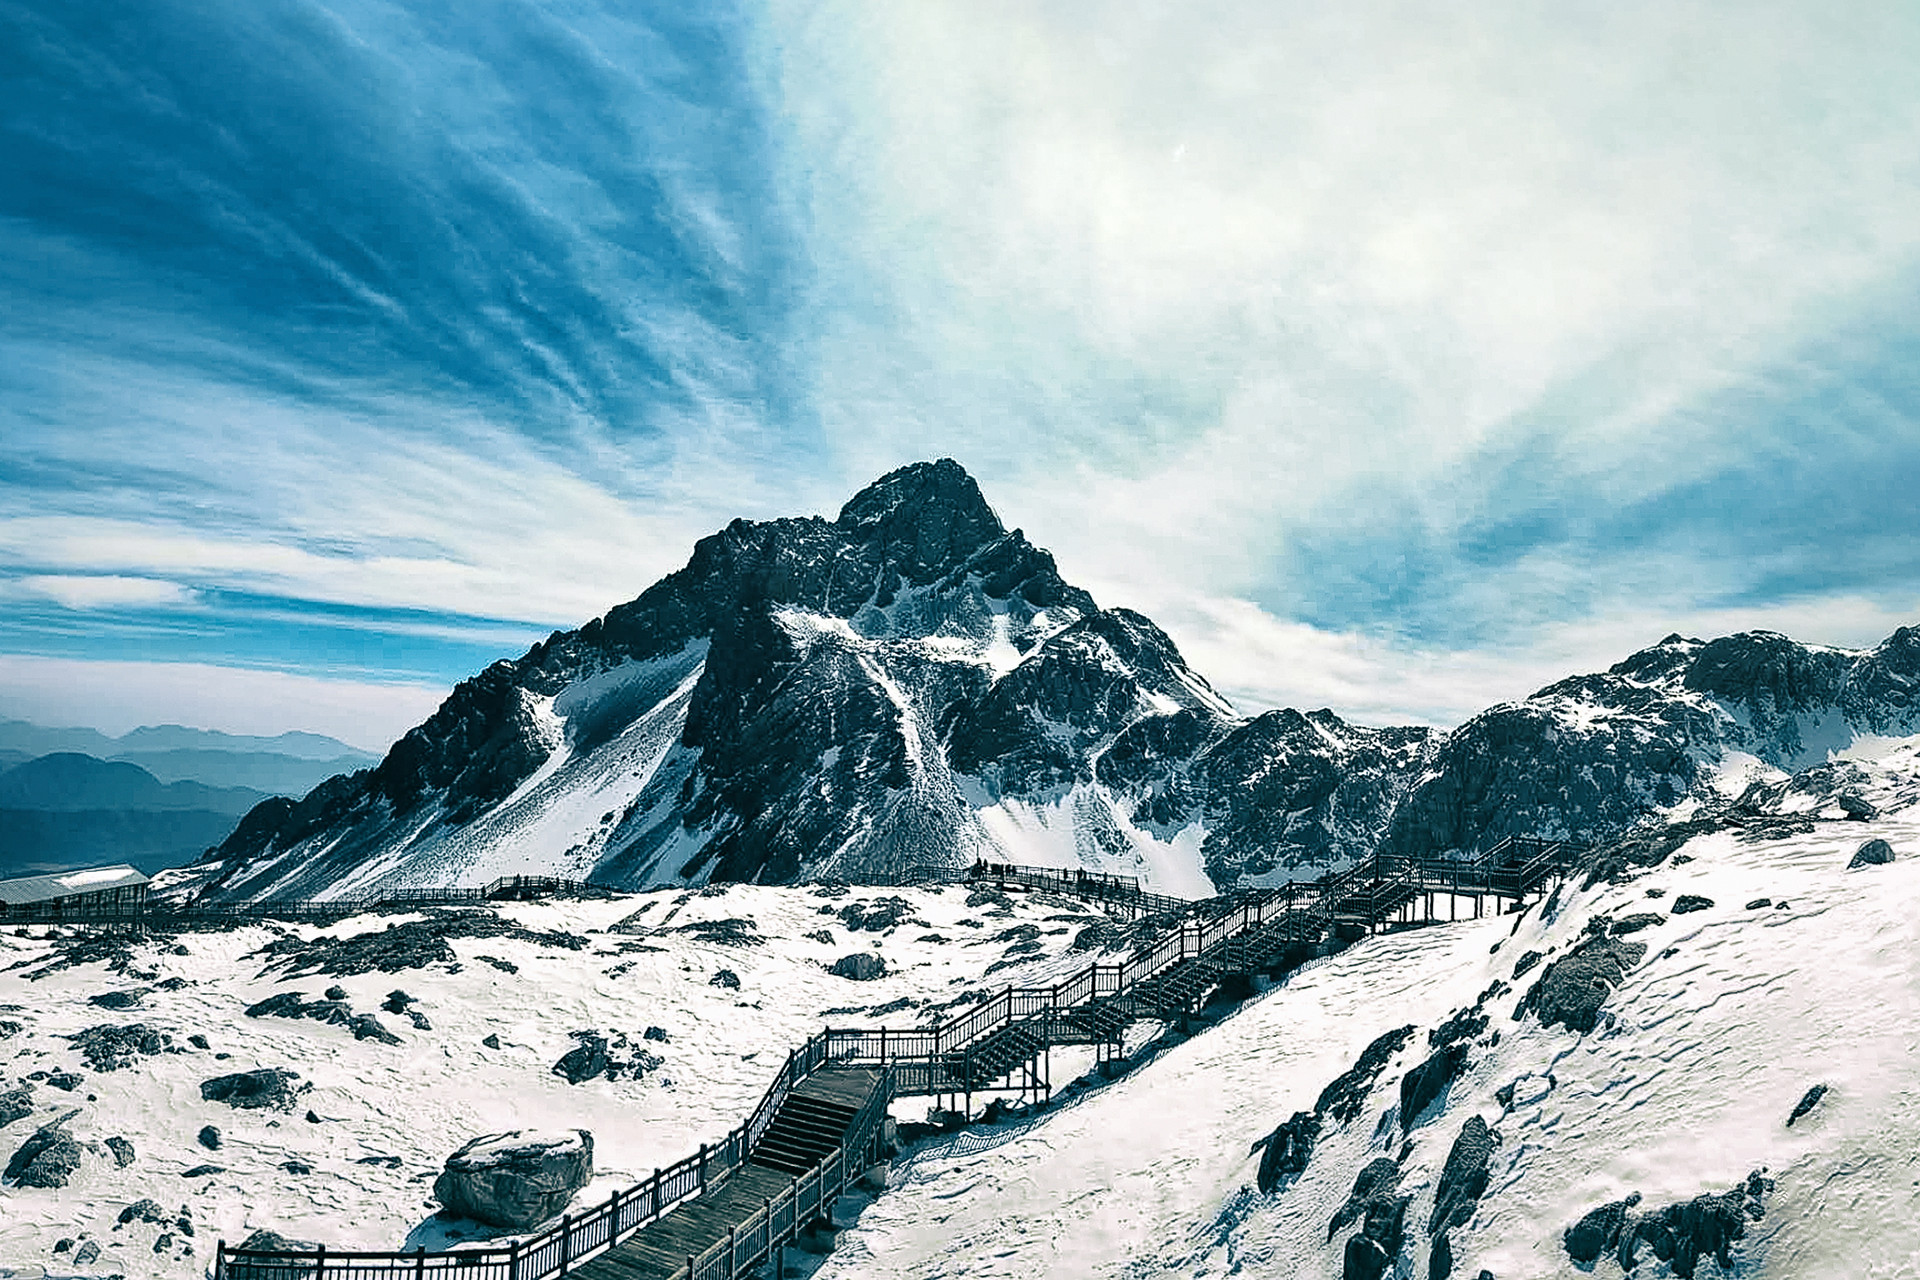 丽江玉龙雪山,是当地人心目中的神山,当地有一个神秘的传说